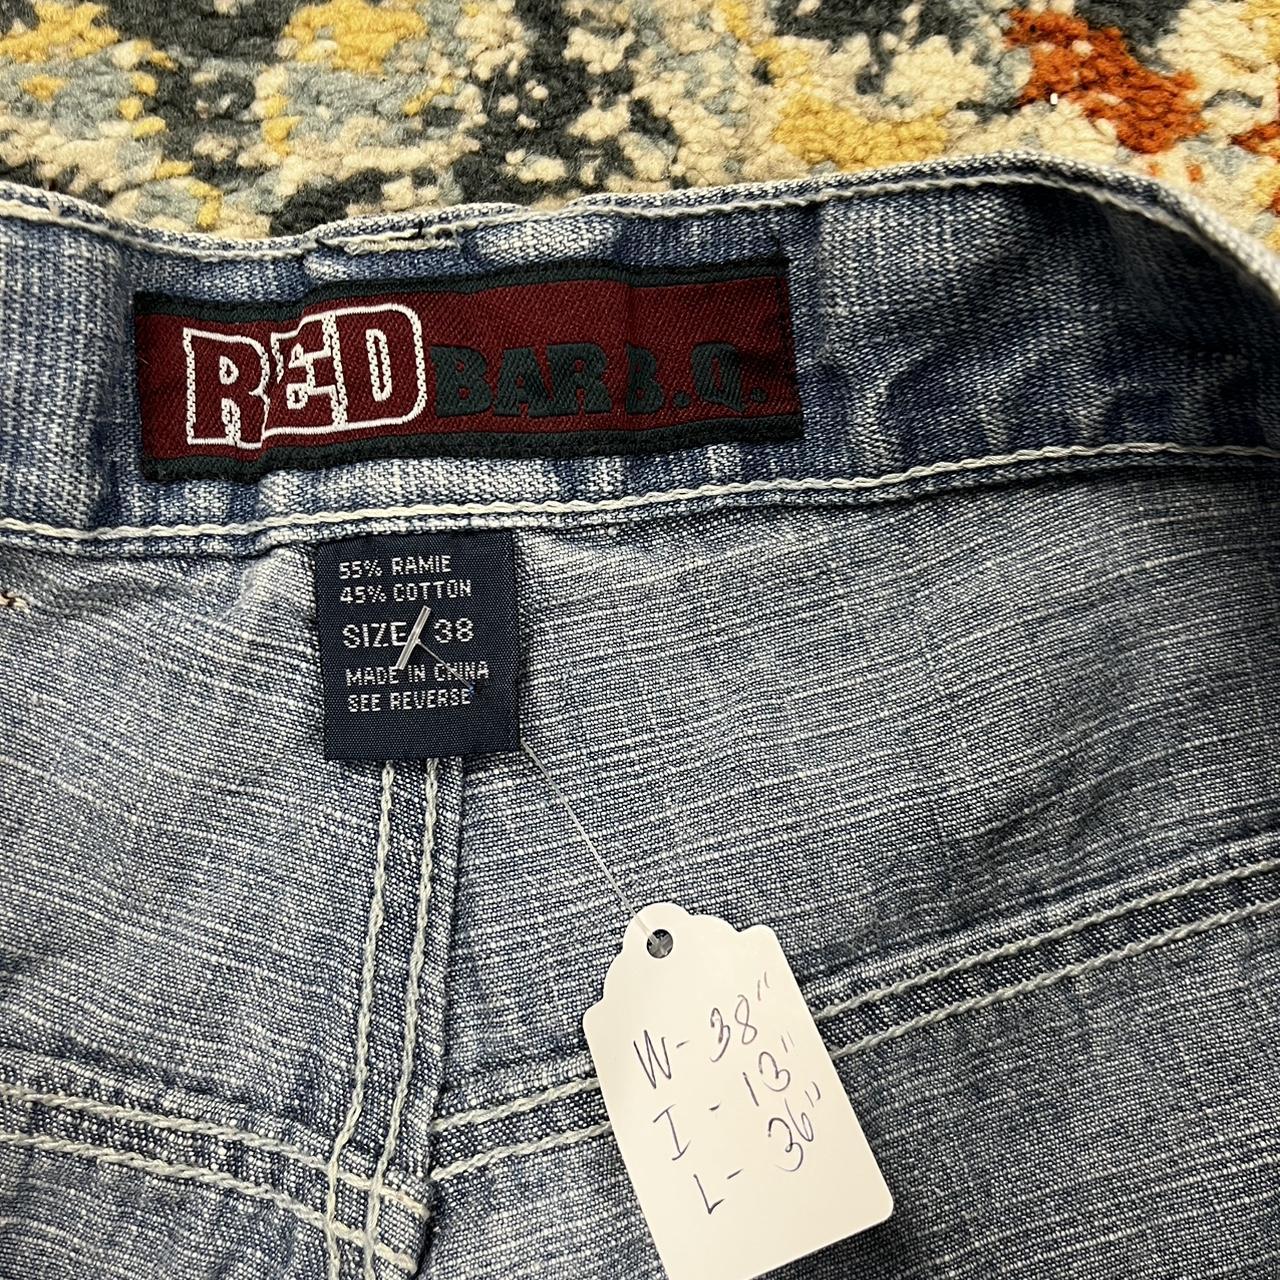 Vintage Y2K Red Barb Jeans Shorts/Jorts W:38” I:13” - Depop